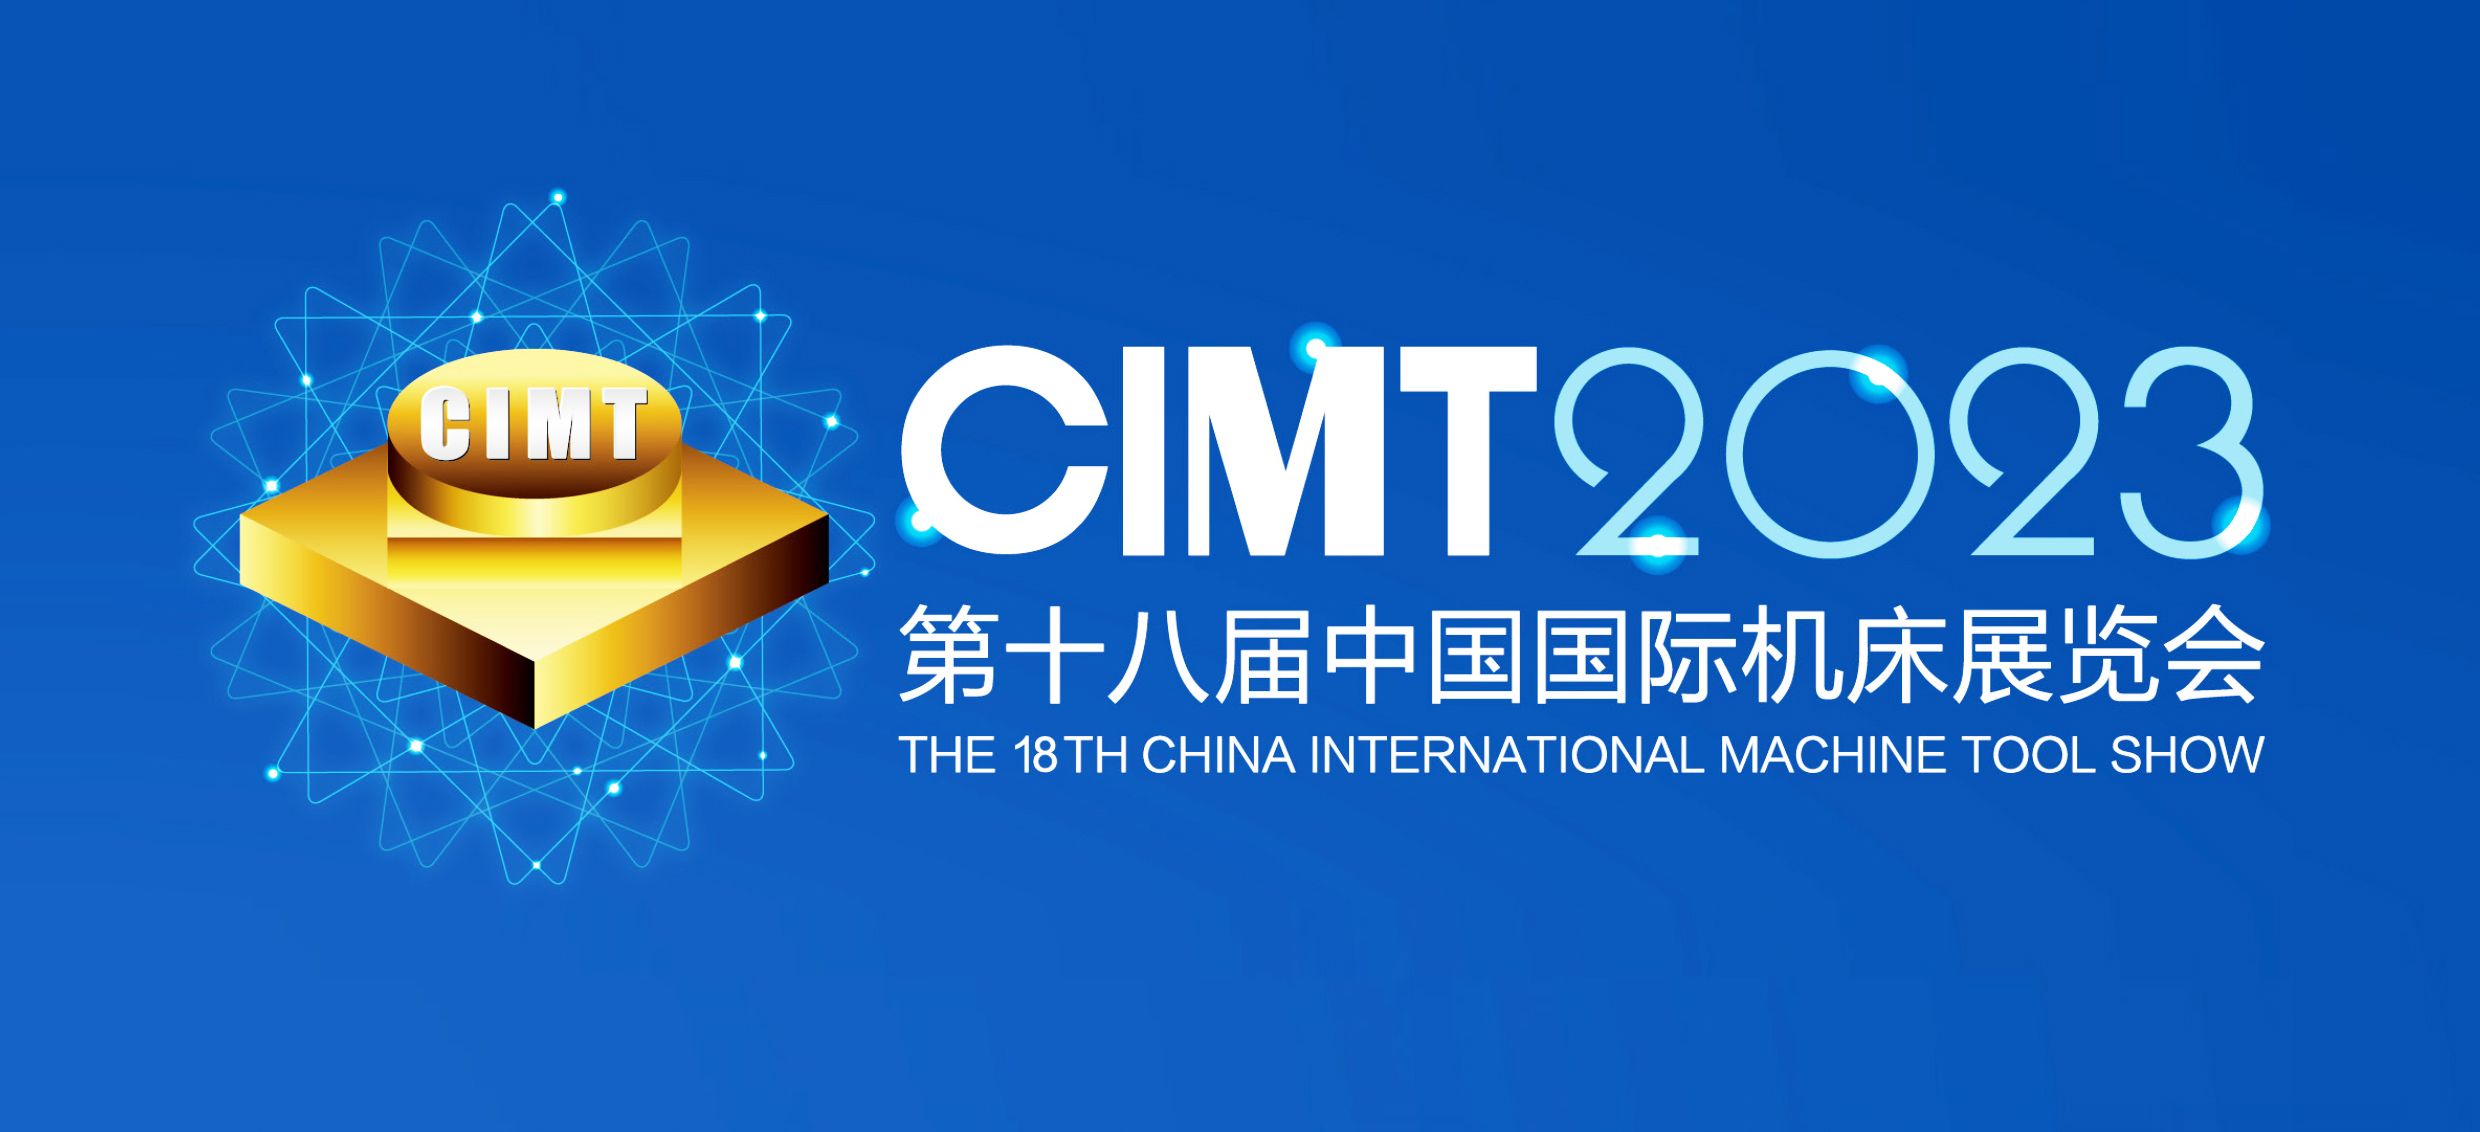 展會邀請|4月10-15第十八屆中國國際機床展覽會通錦精密與您相約北京！